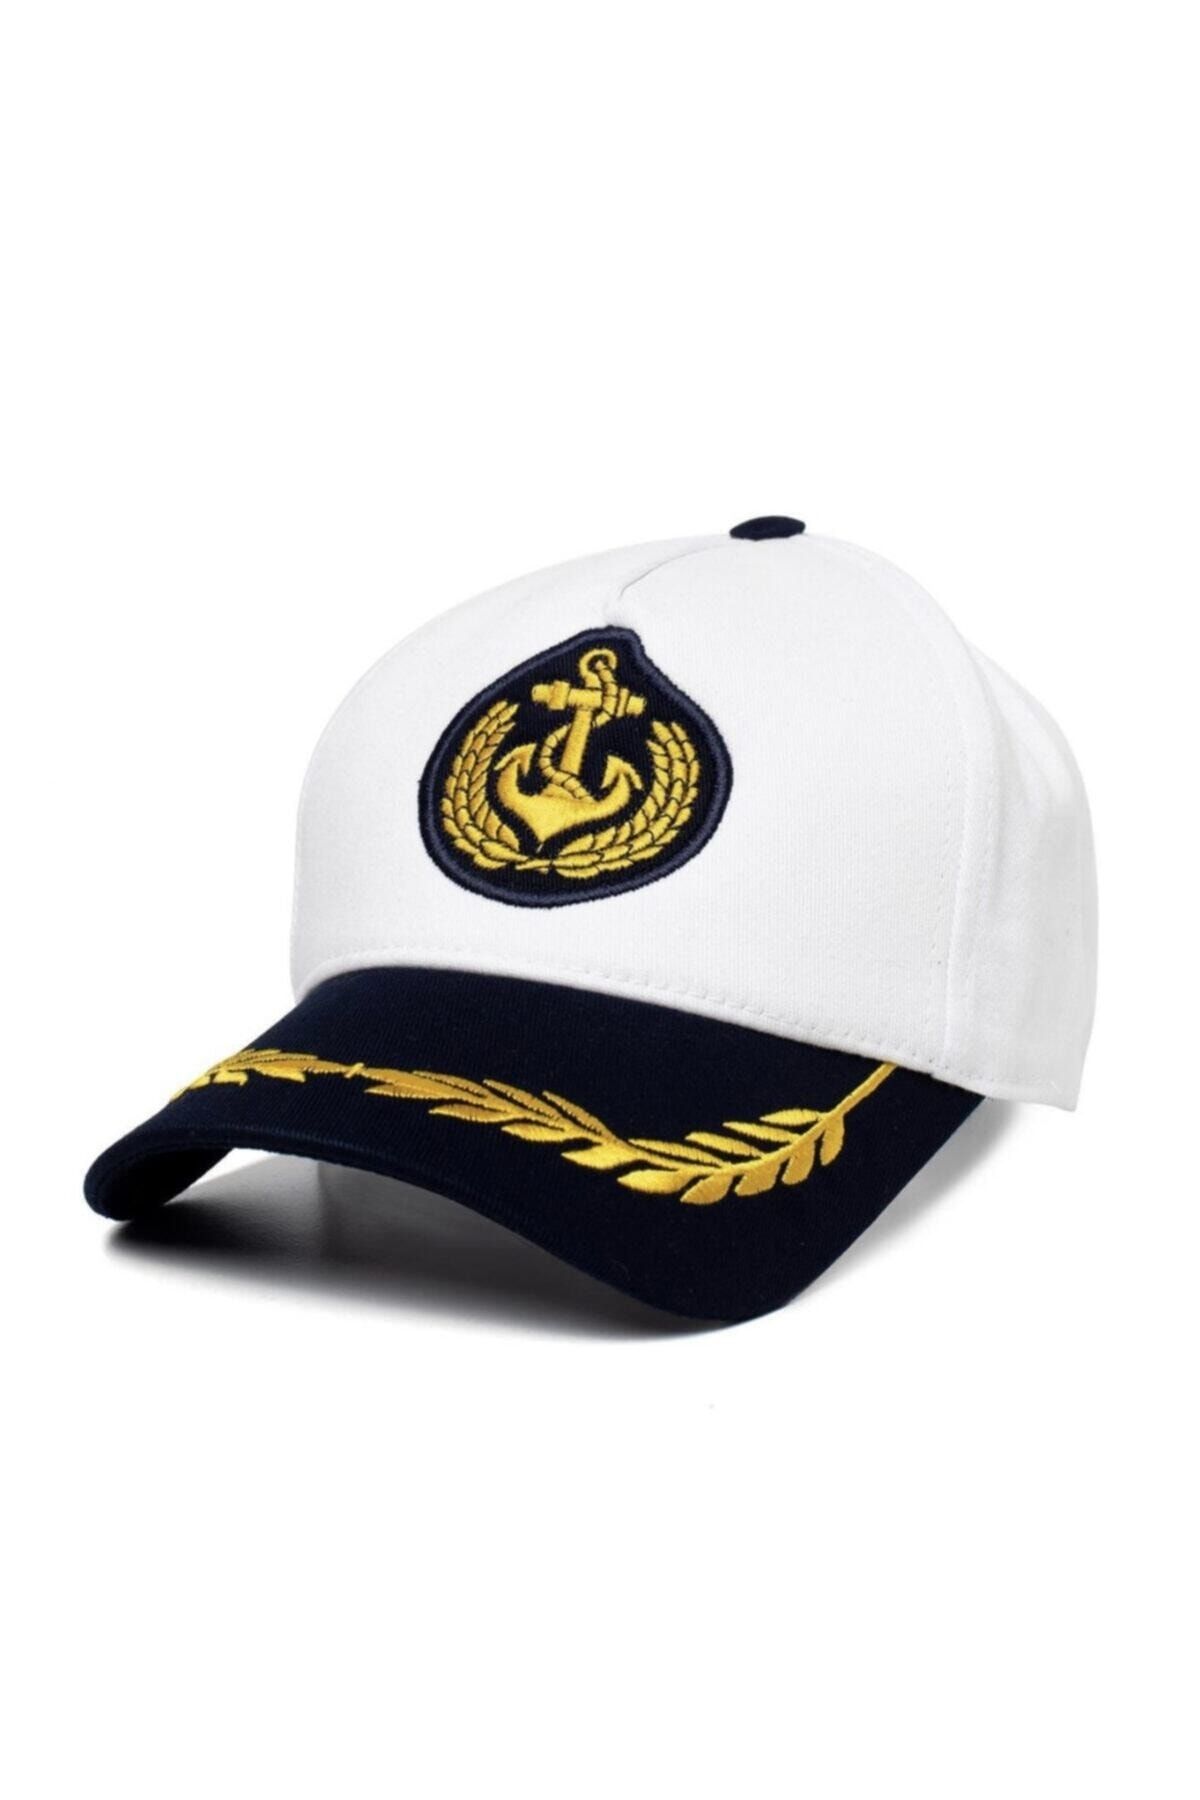 Genel Markalar Denizci Kaptan Şapka Kep (Beyaz)